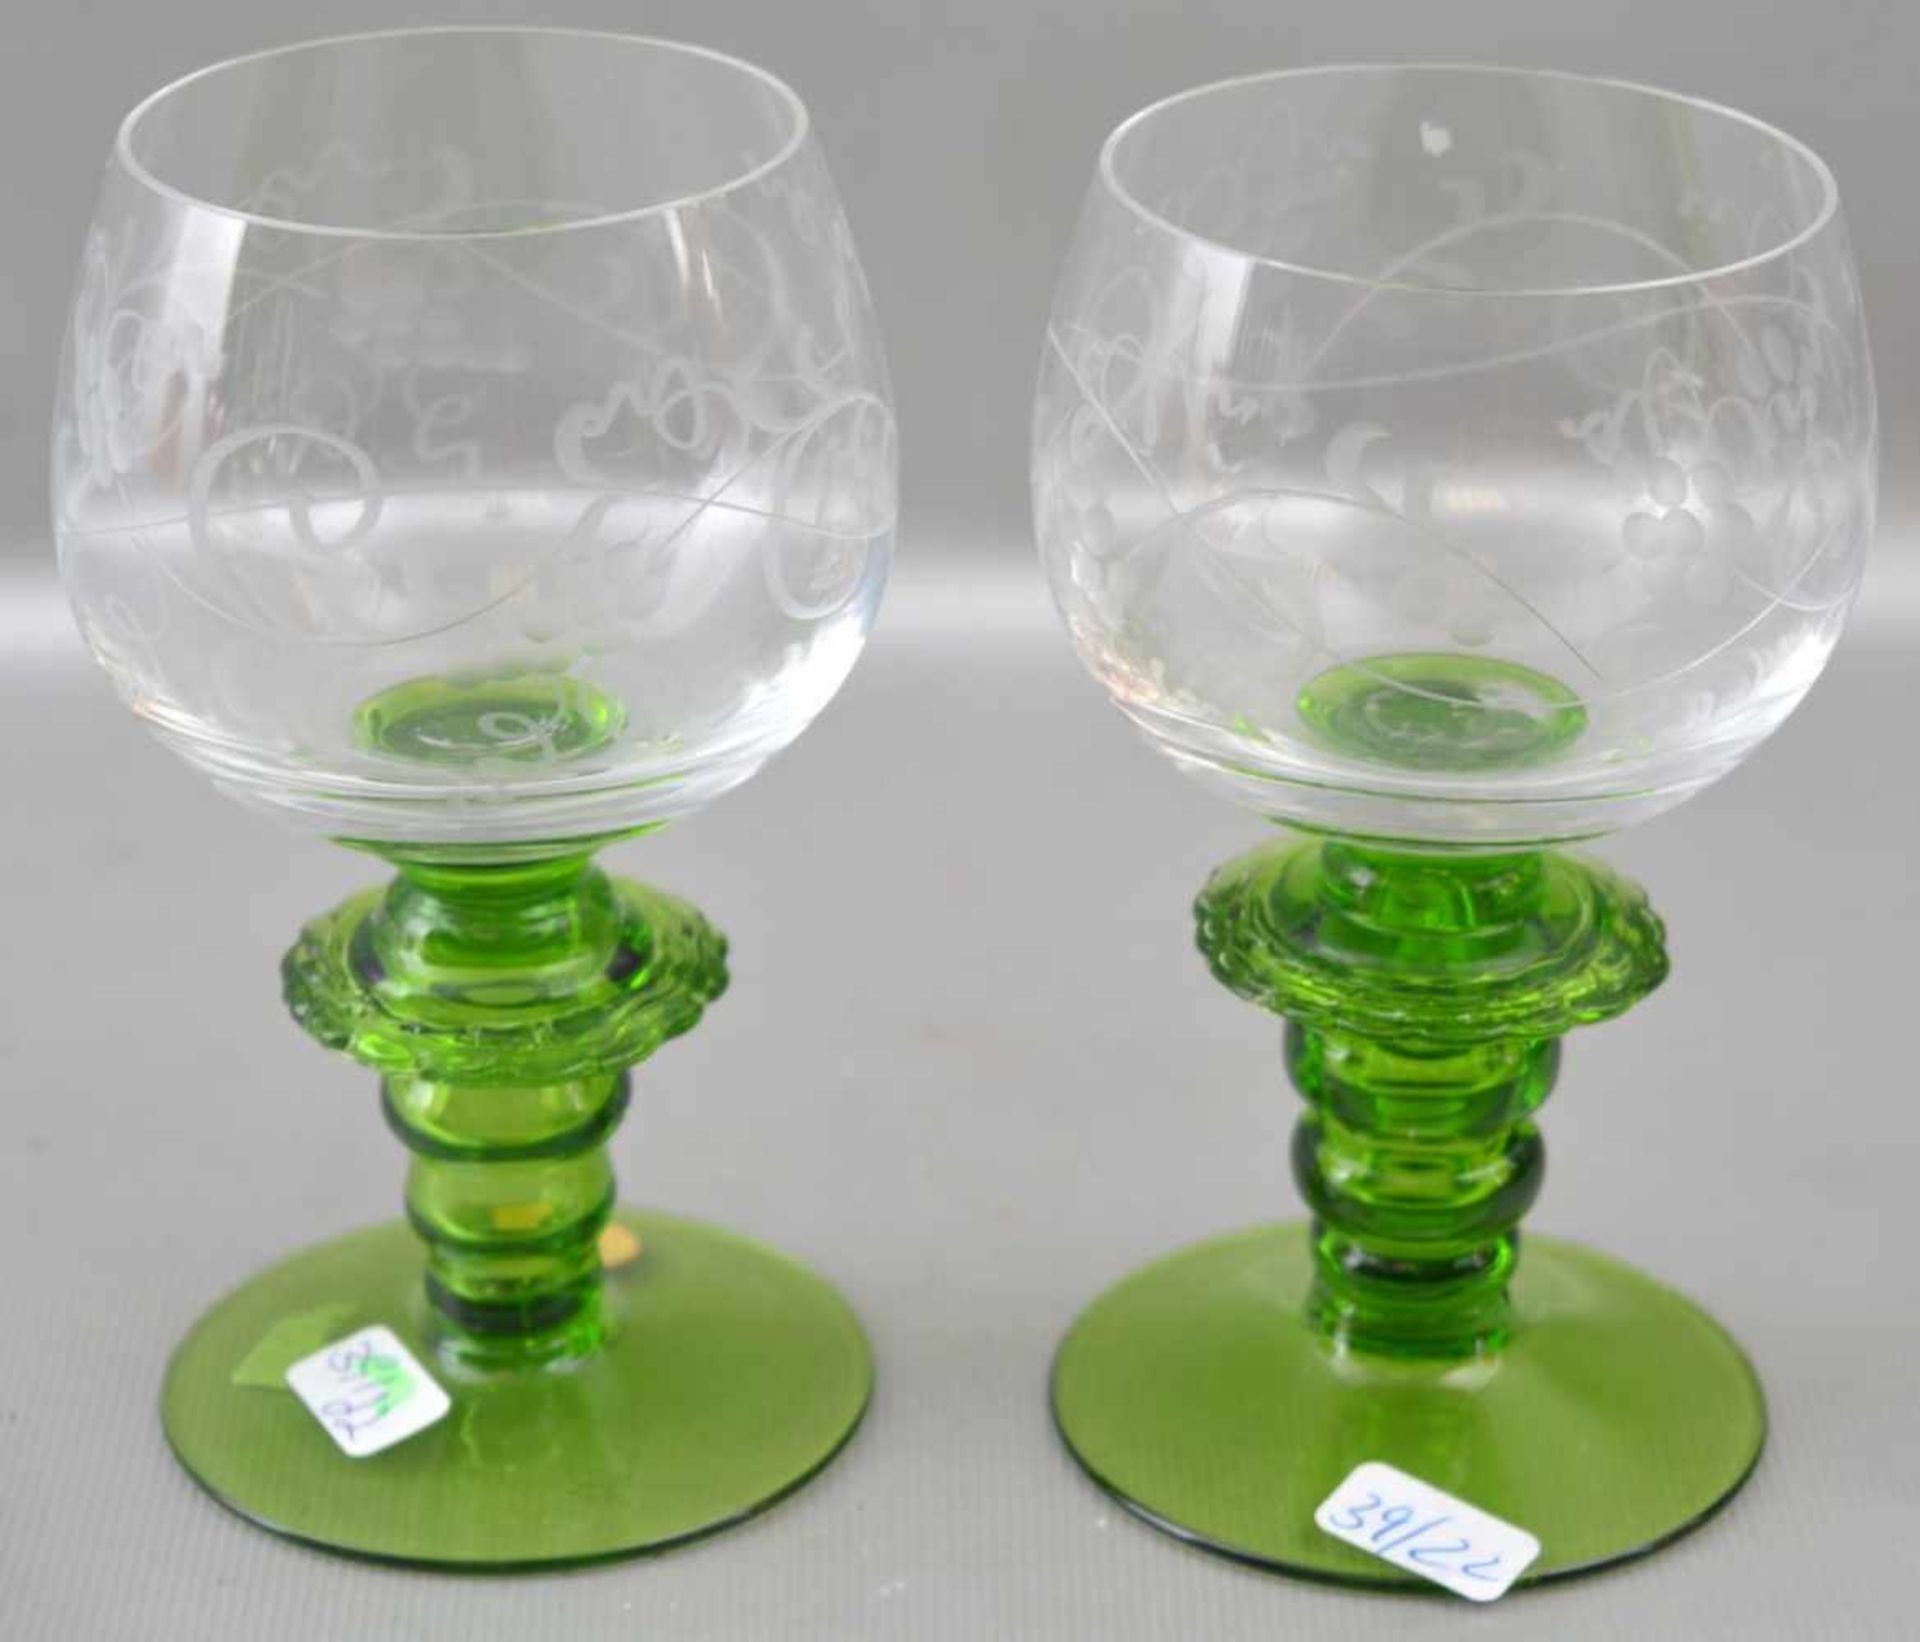 Zwei Weingläser farbl. Glas, geschliffen verziert, grüner Schaft und Kelch, H 11 cm, FM